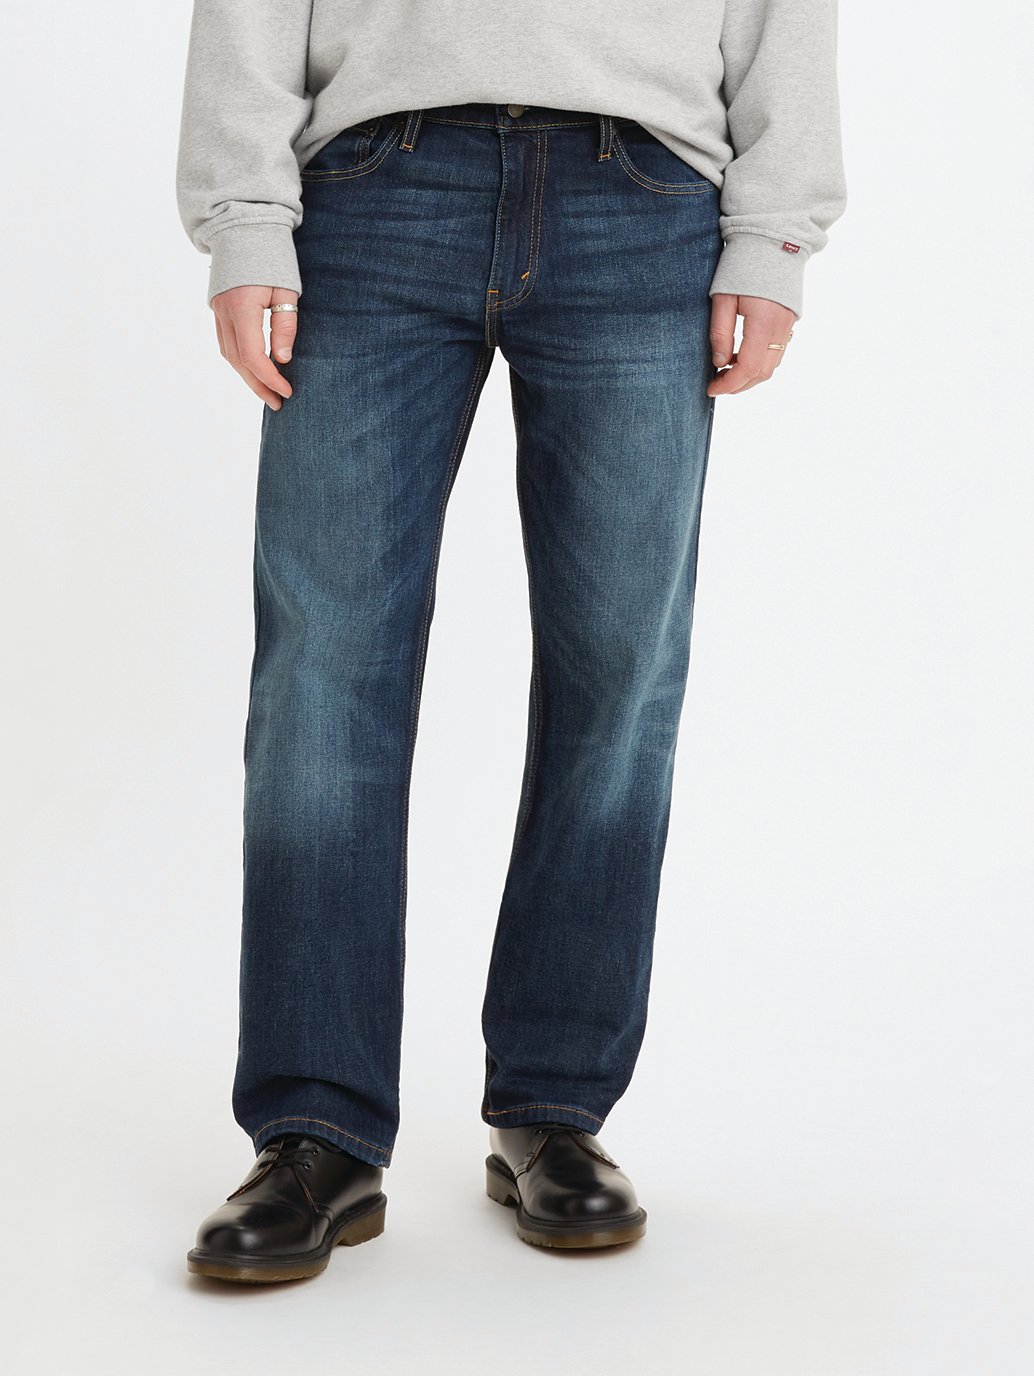 Buy Men's Jeans | Levi’s® Official Online Store TH